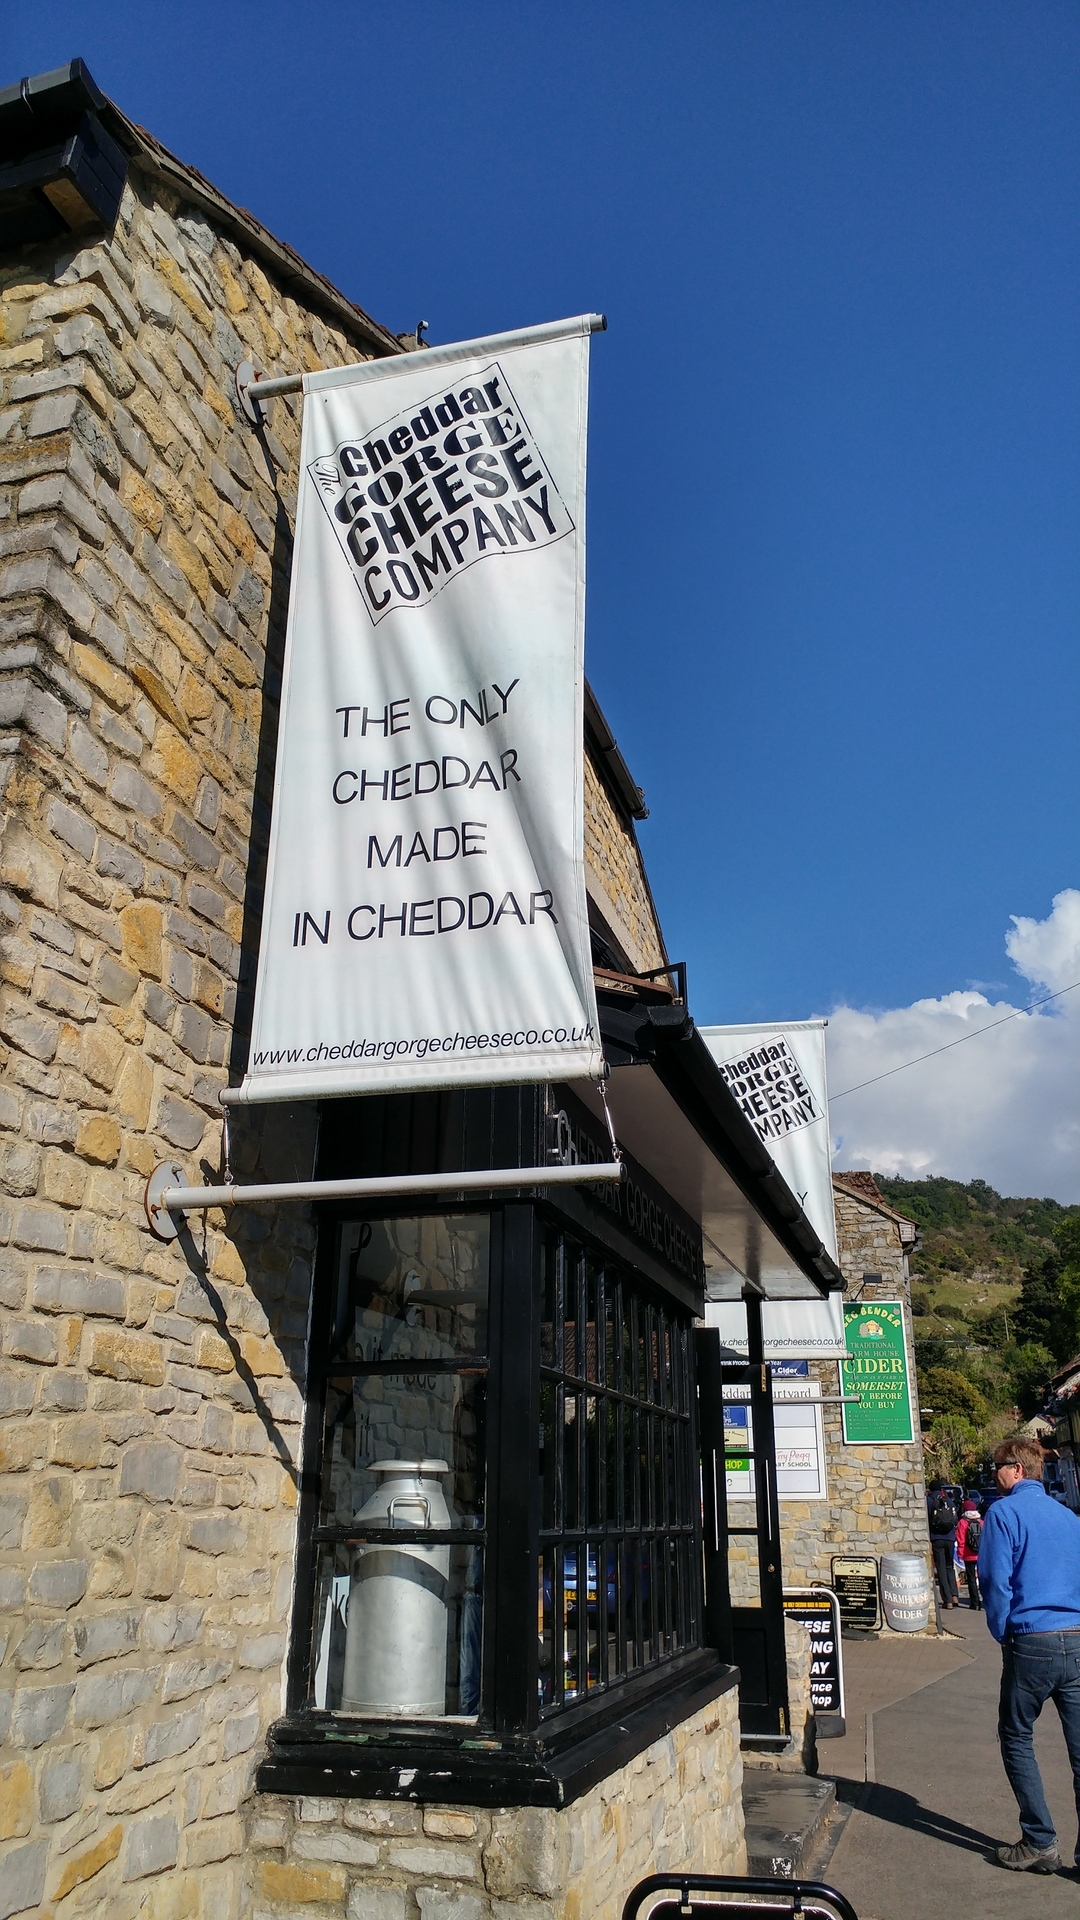 #小众发现社 喜欢奶酪的人一定知道大名鼎鼎的cheddar 奶酪。而这个品牌就是以英国名为Chedd